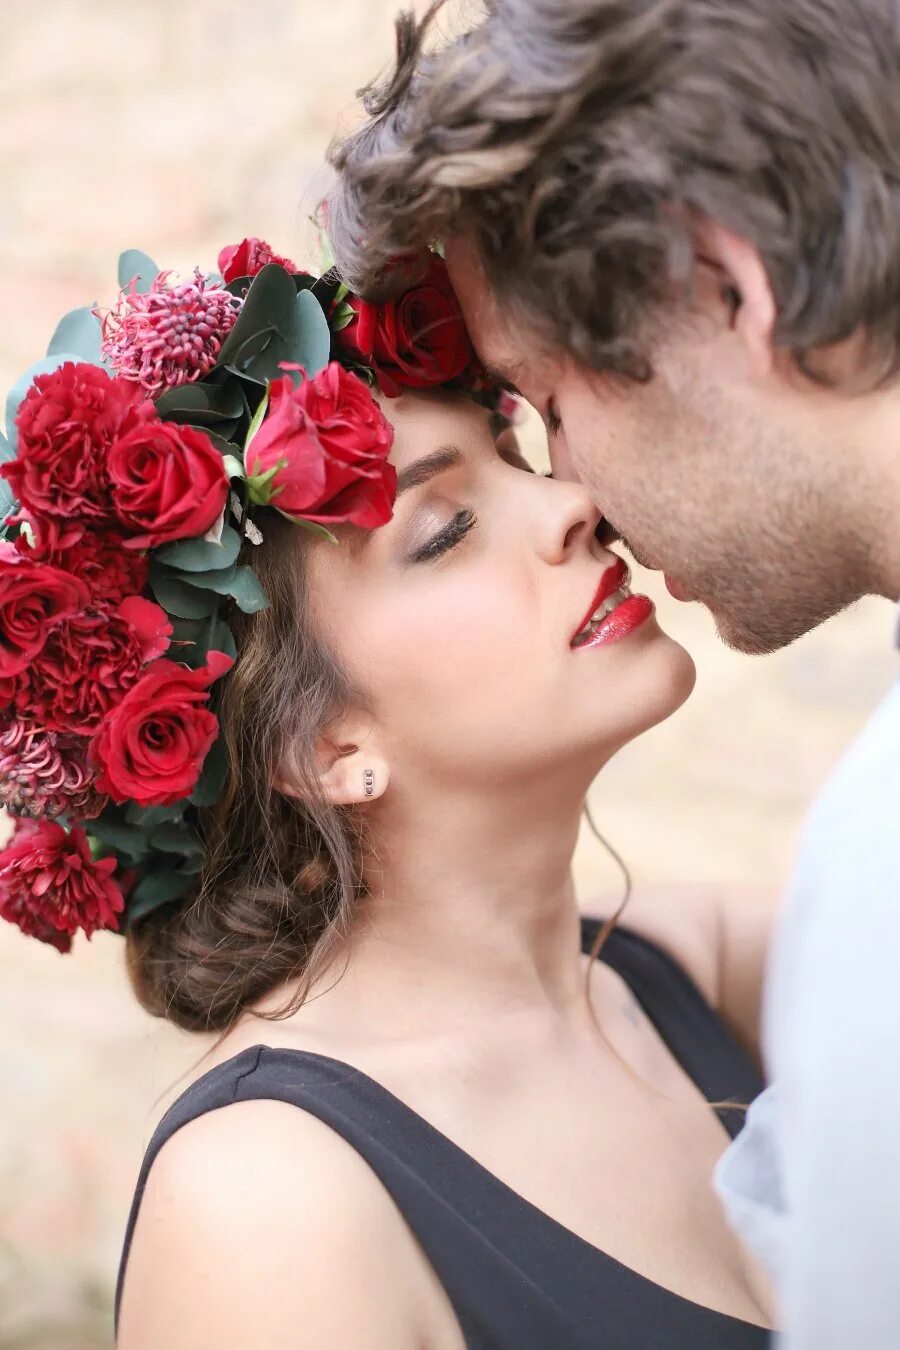 Цвет романтики. Цветочный поцелуй. Цветок поцелуй. Красивые романтичные цветы. Поцелуй в цветах.